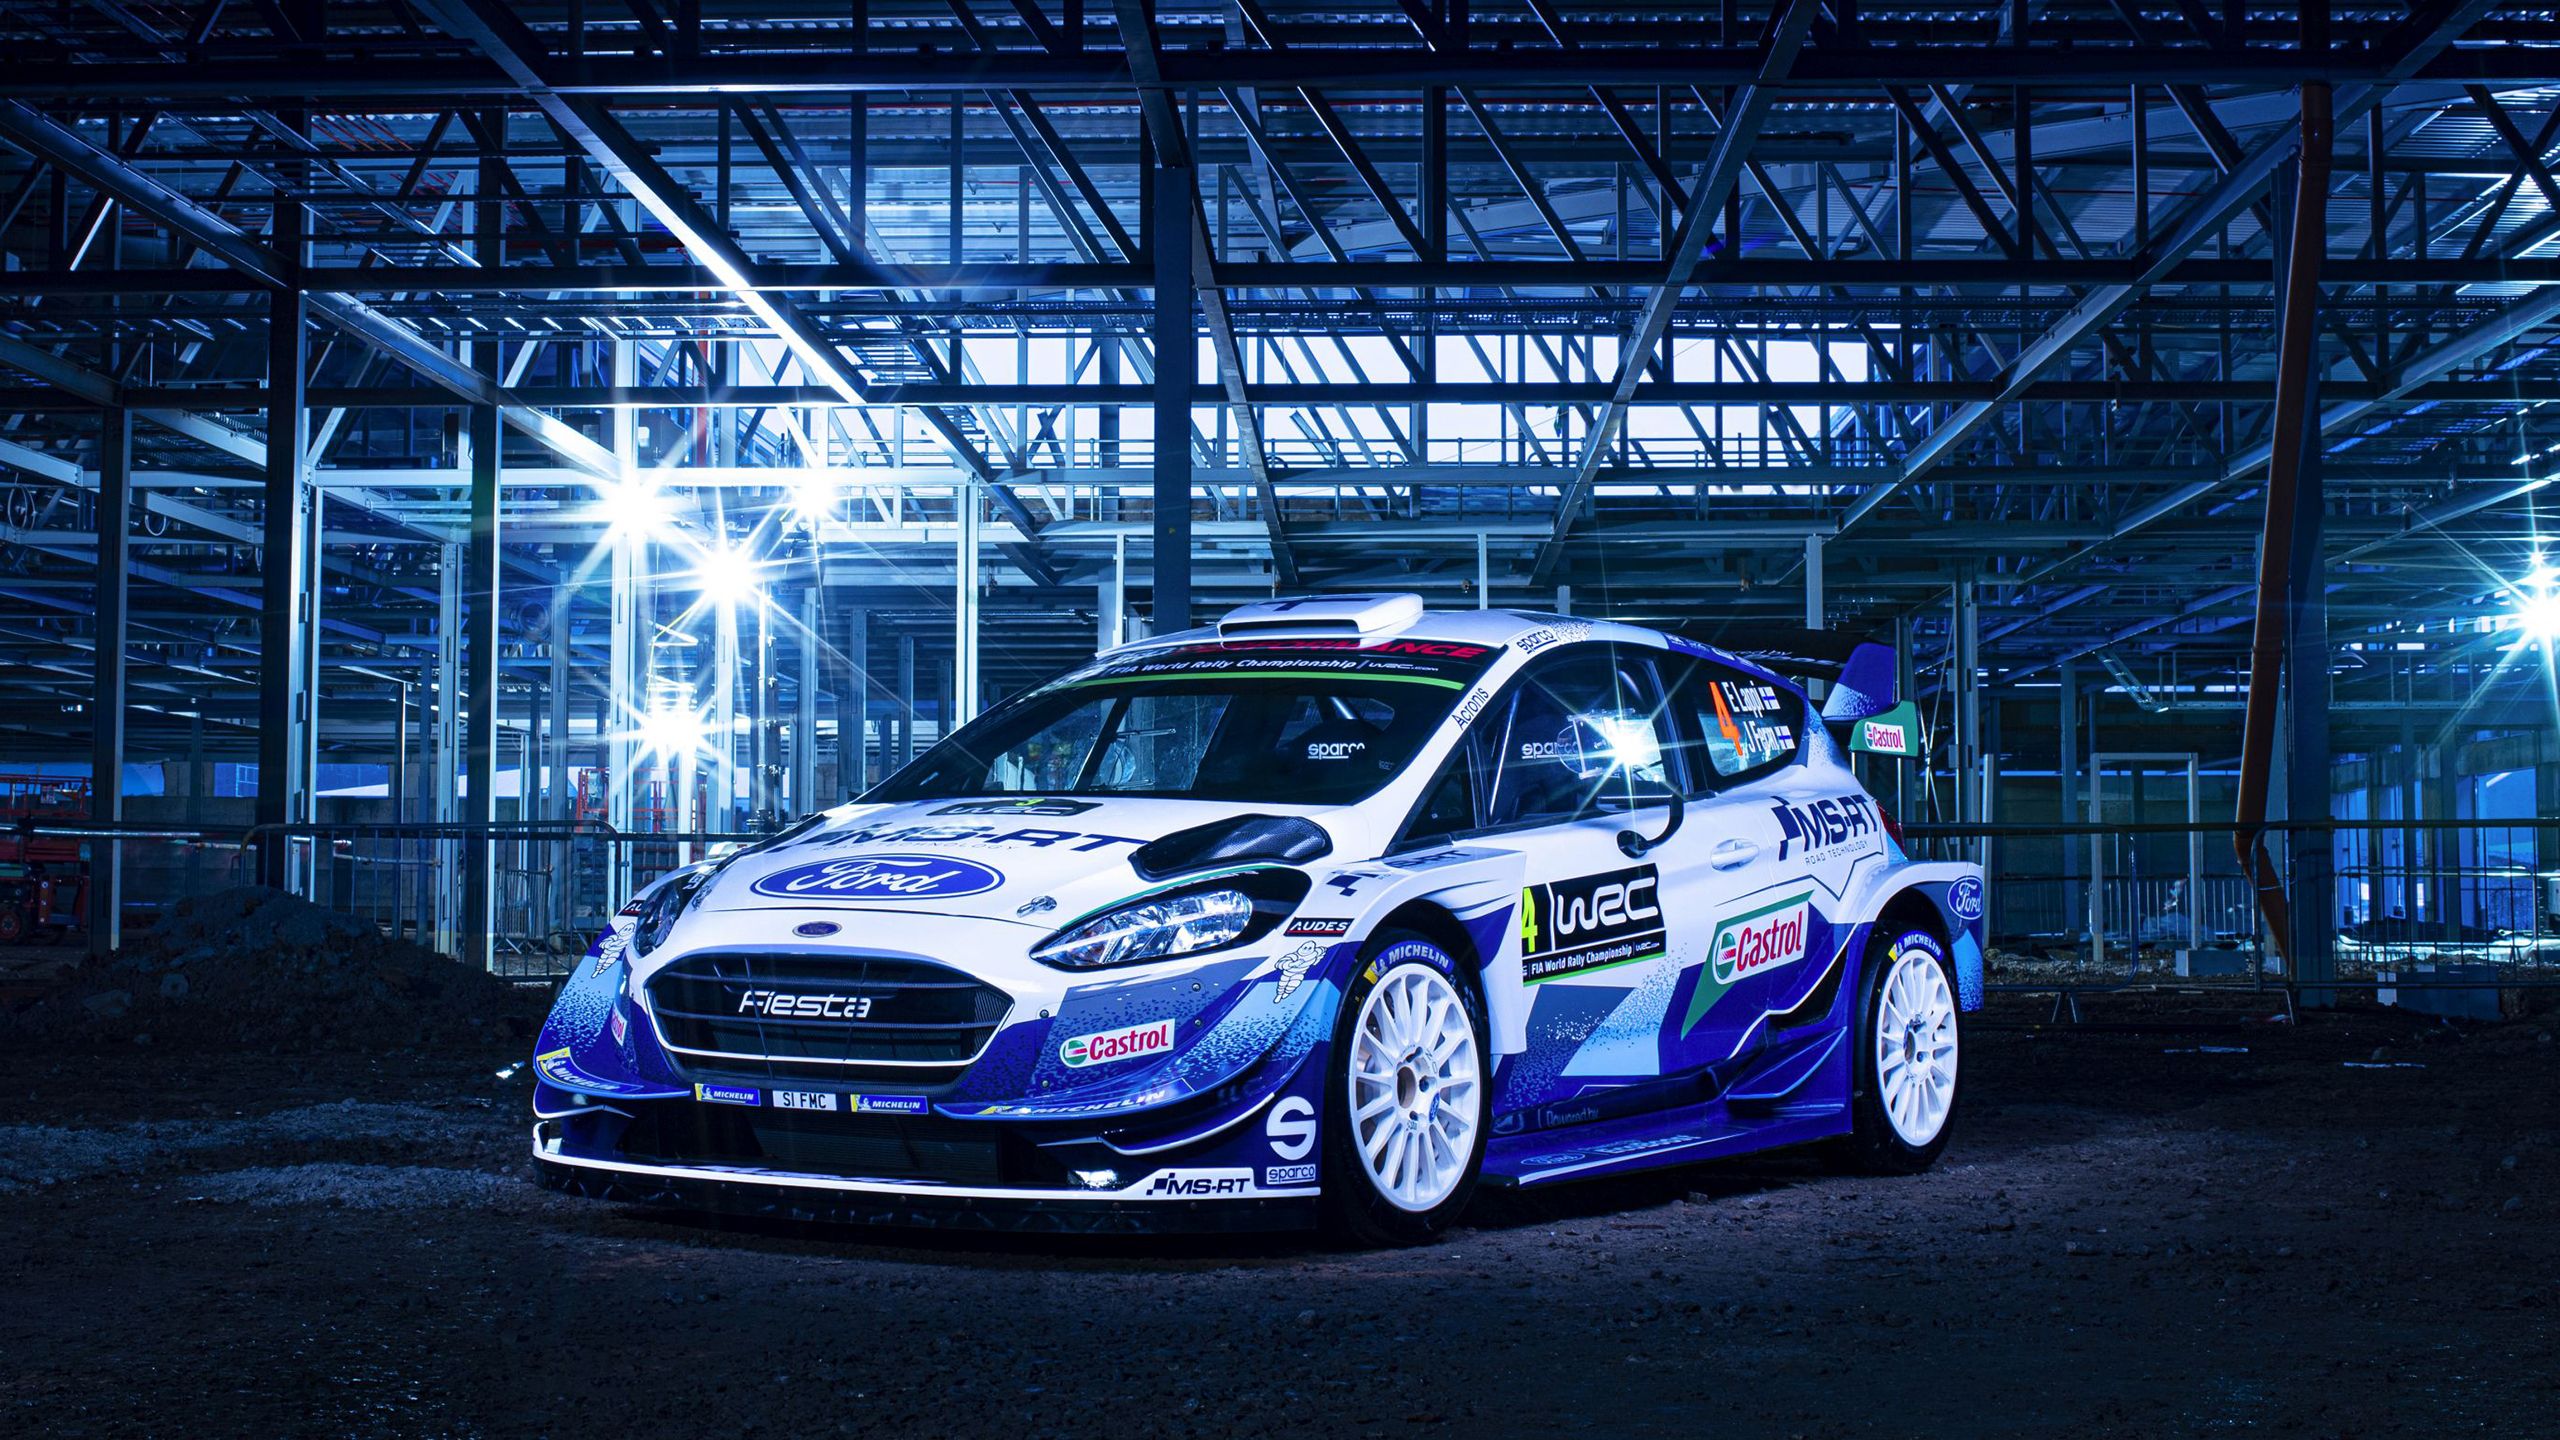 M Sport Ford Fiesta WRC 2020 Wallpaper .hdcarwallpaper.com